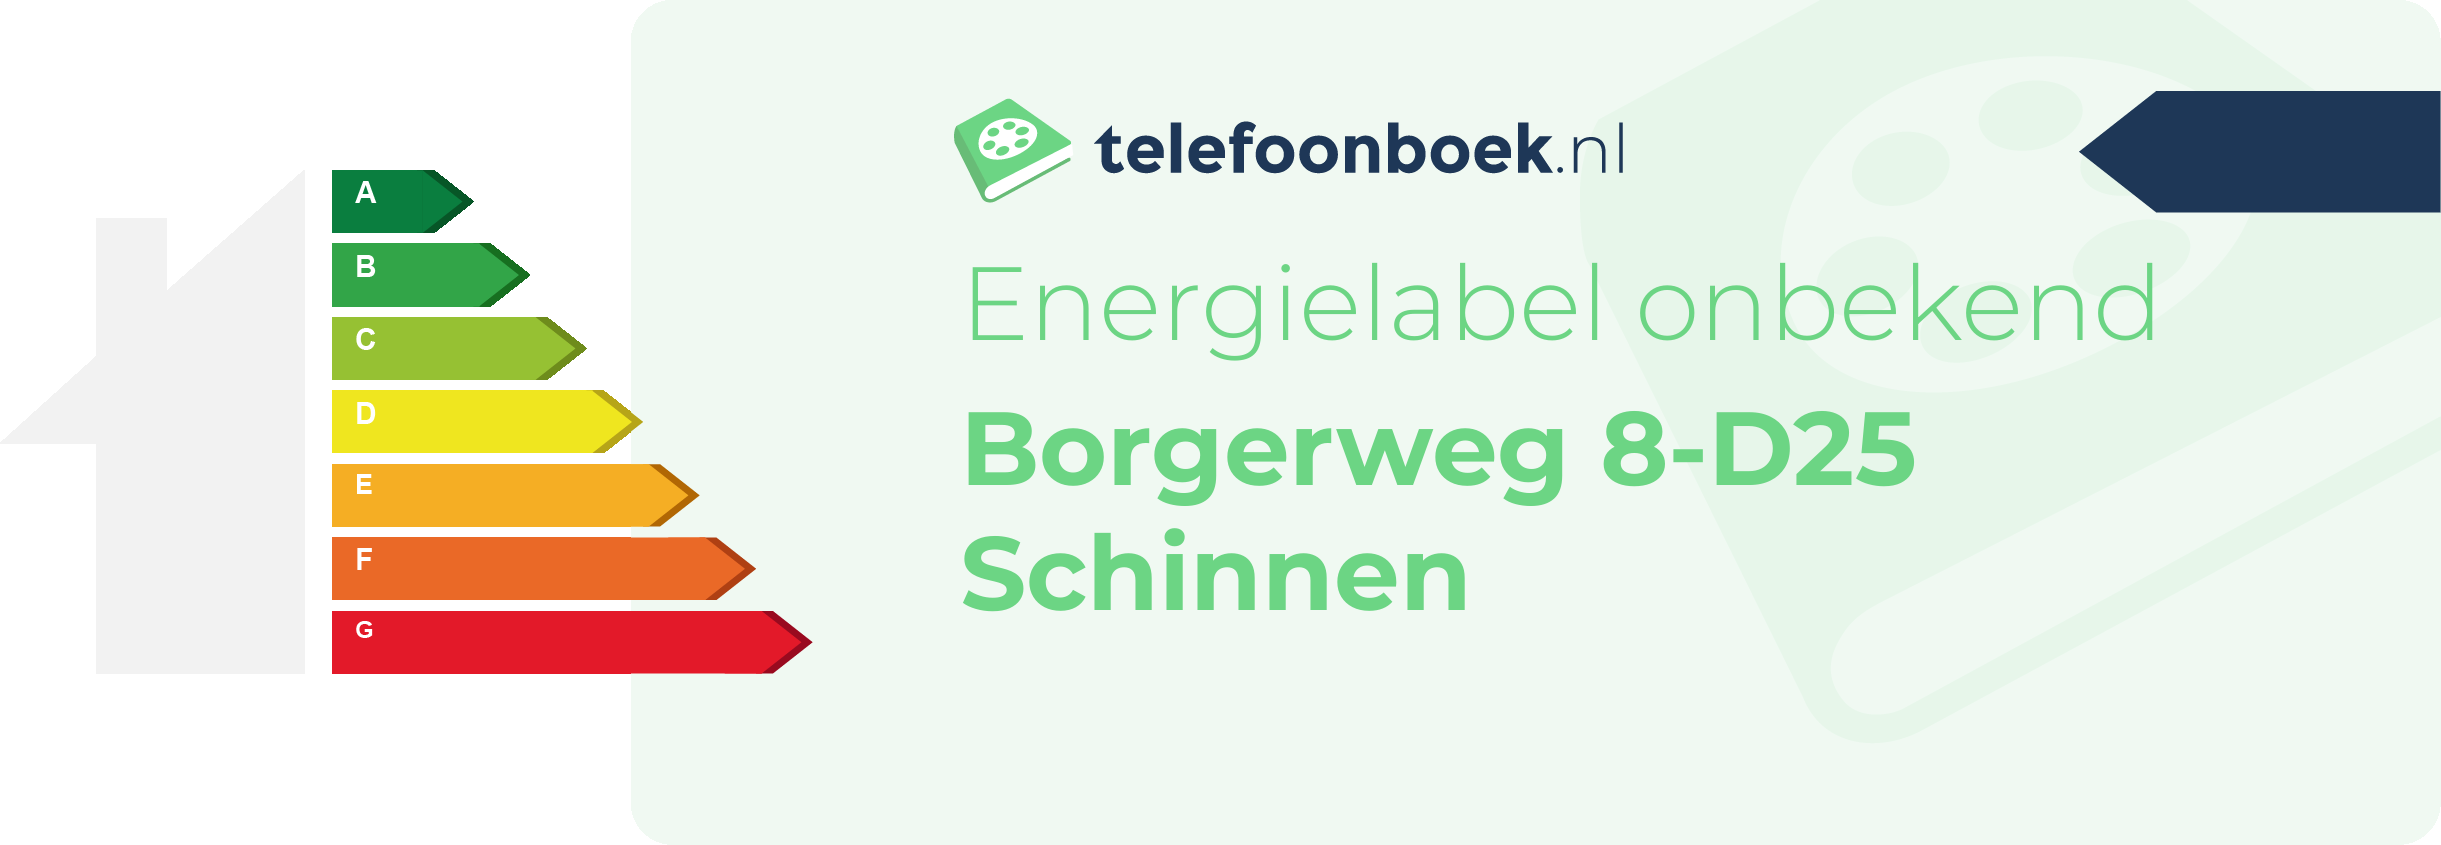 Energielabel Borgerweg 8-D25 Schinnen